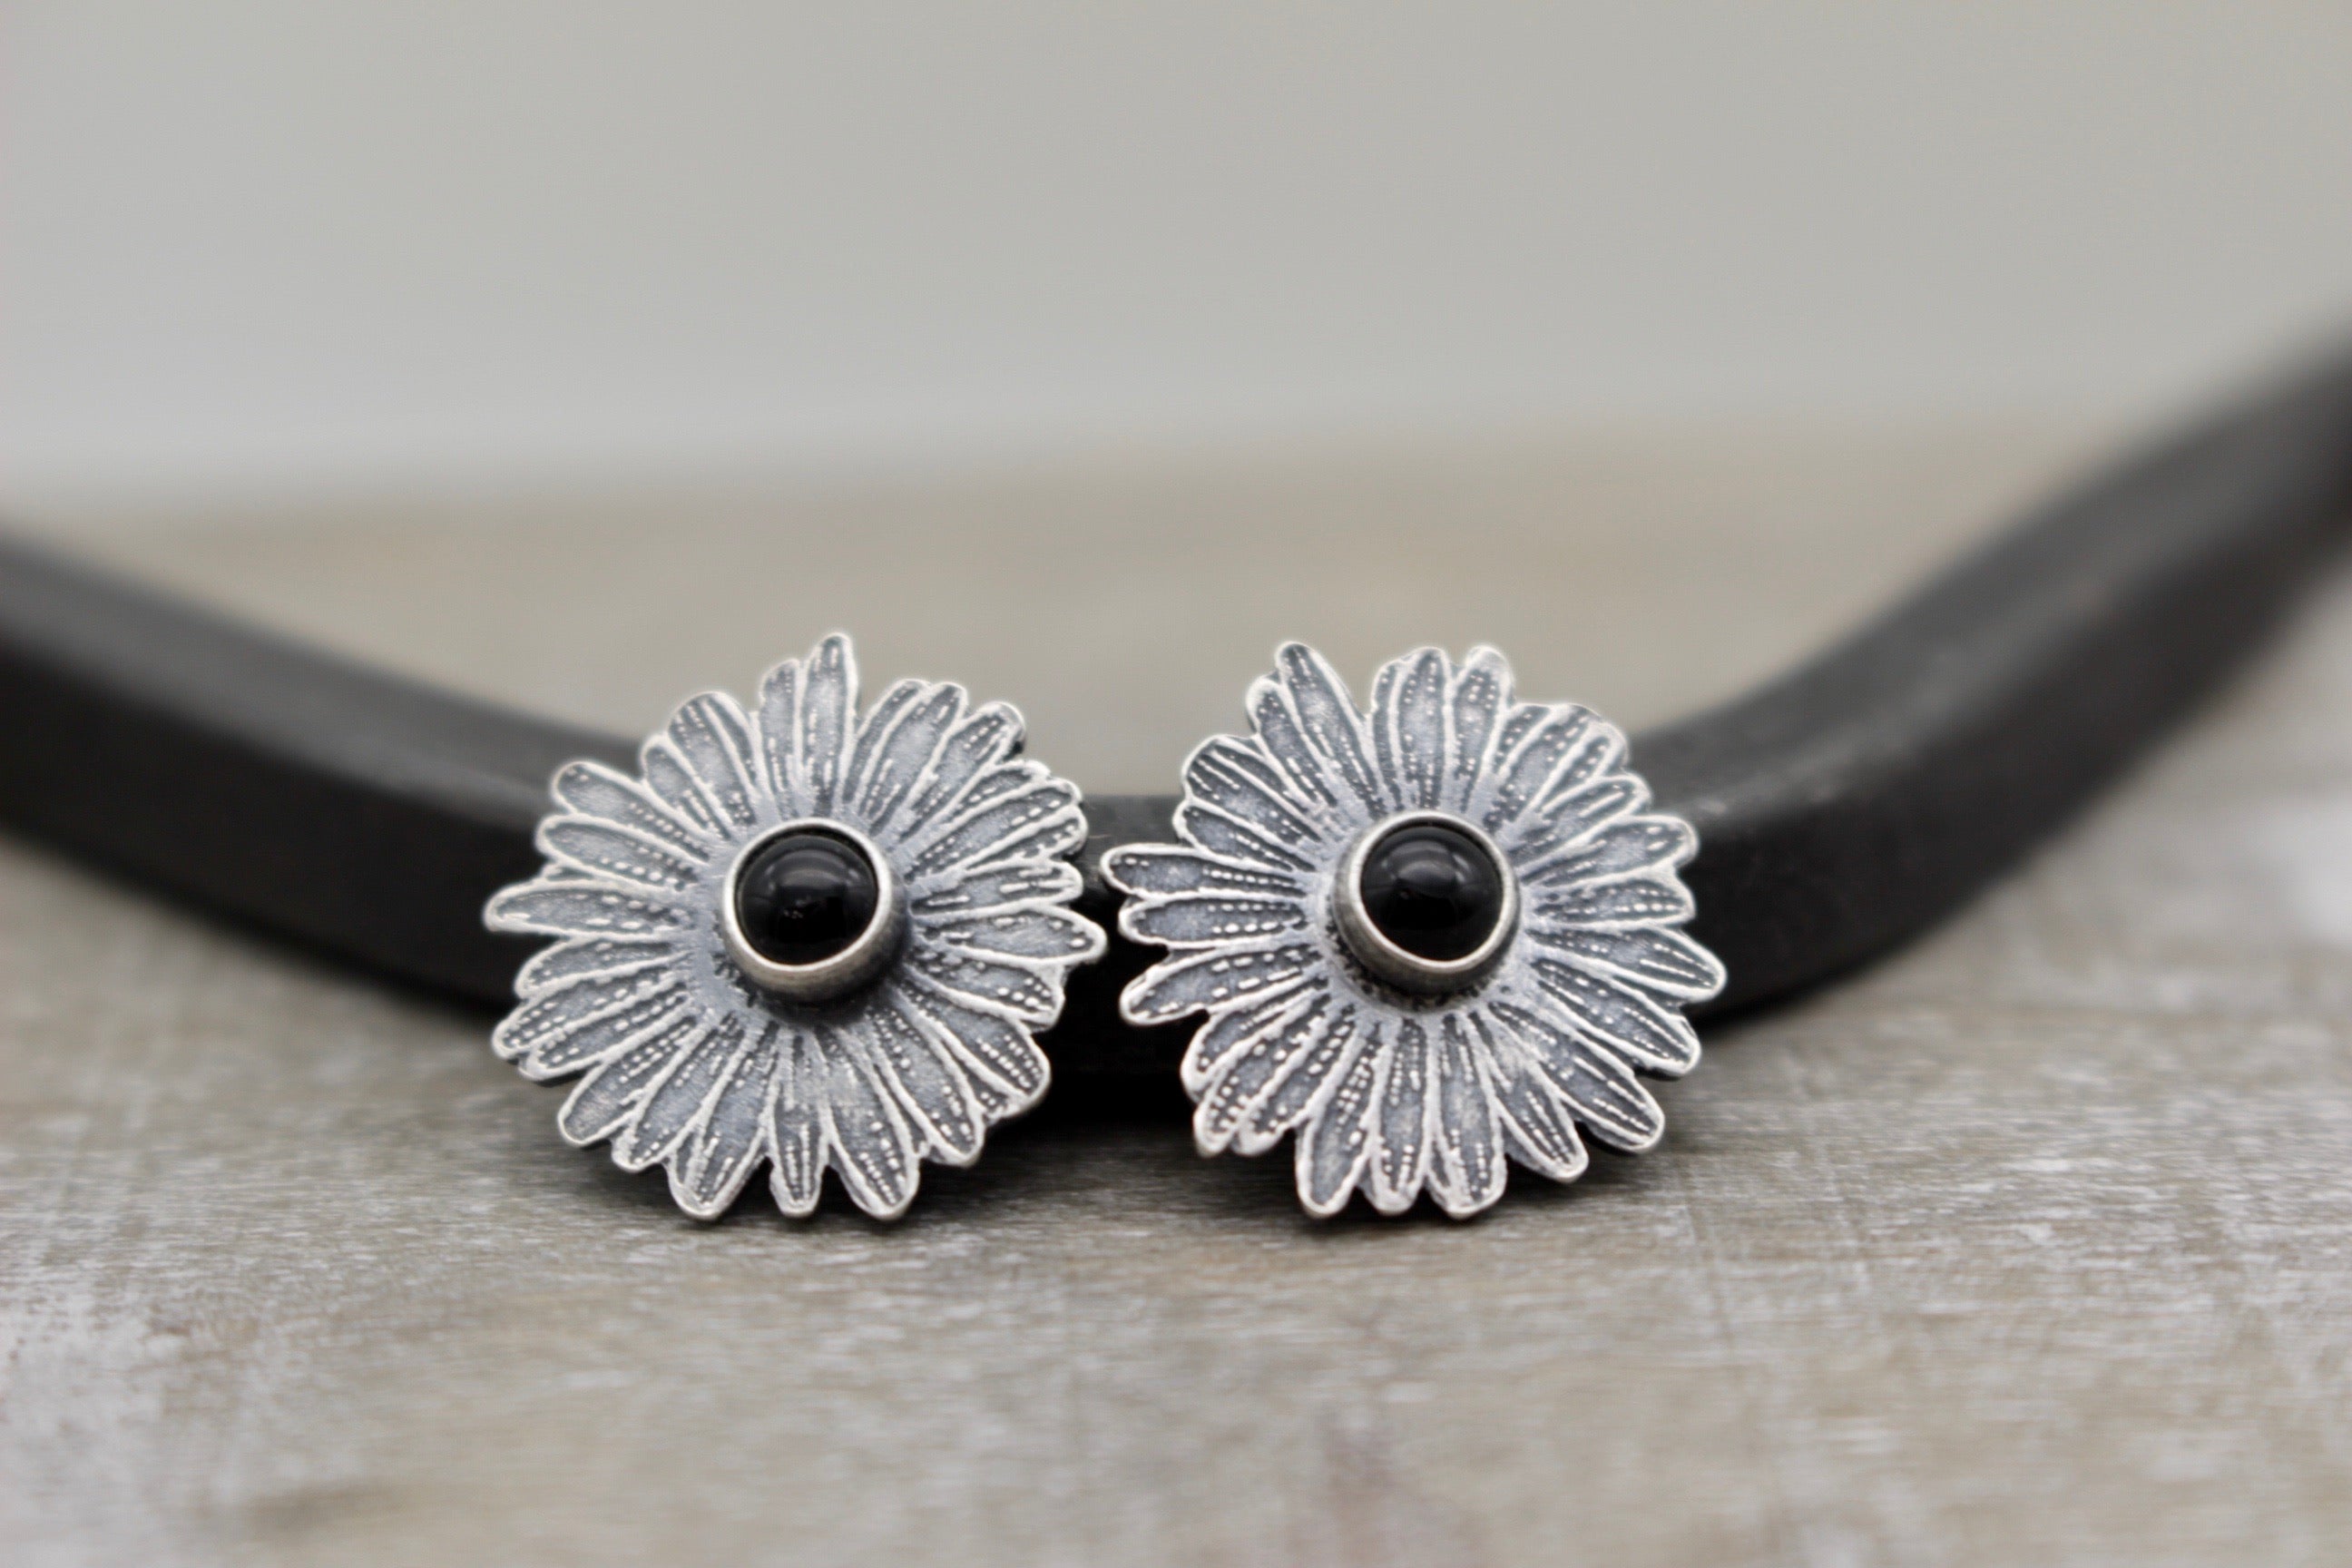 Sterling silver daisy stud earrings